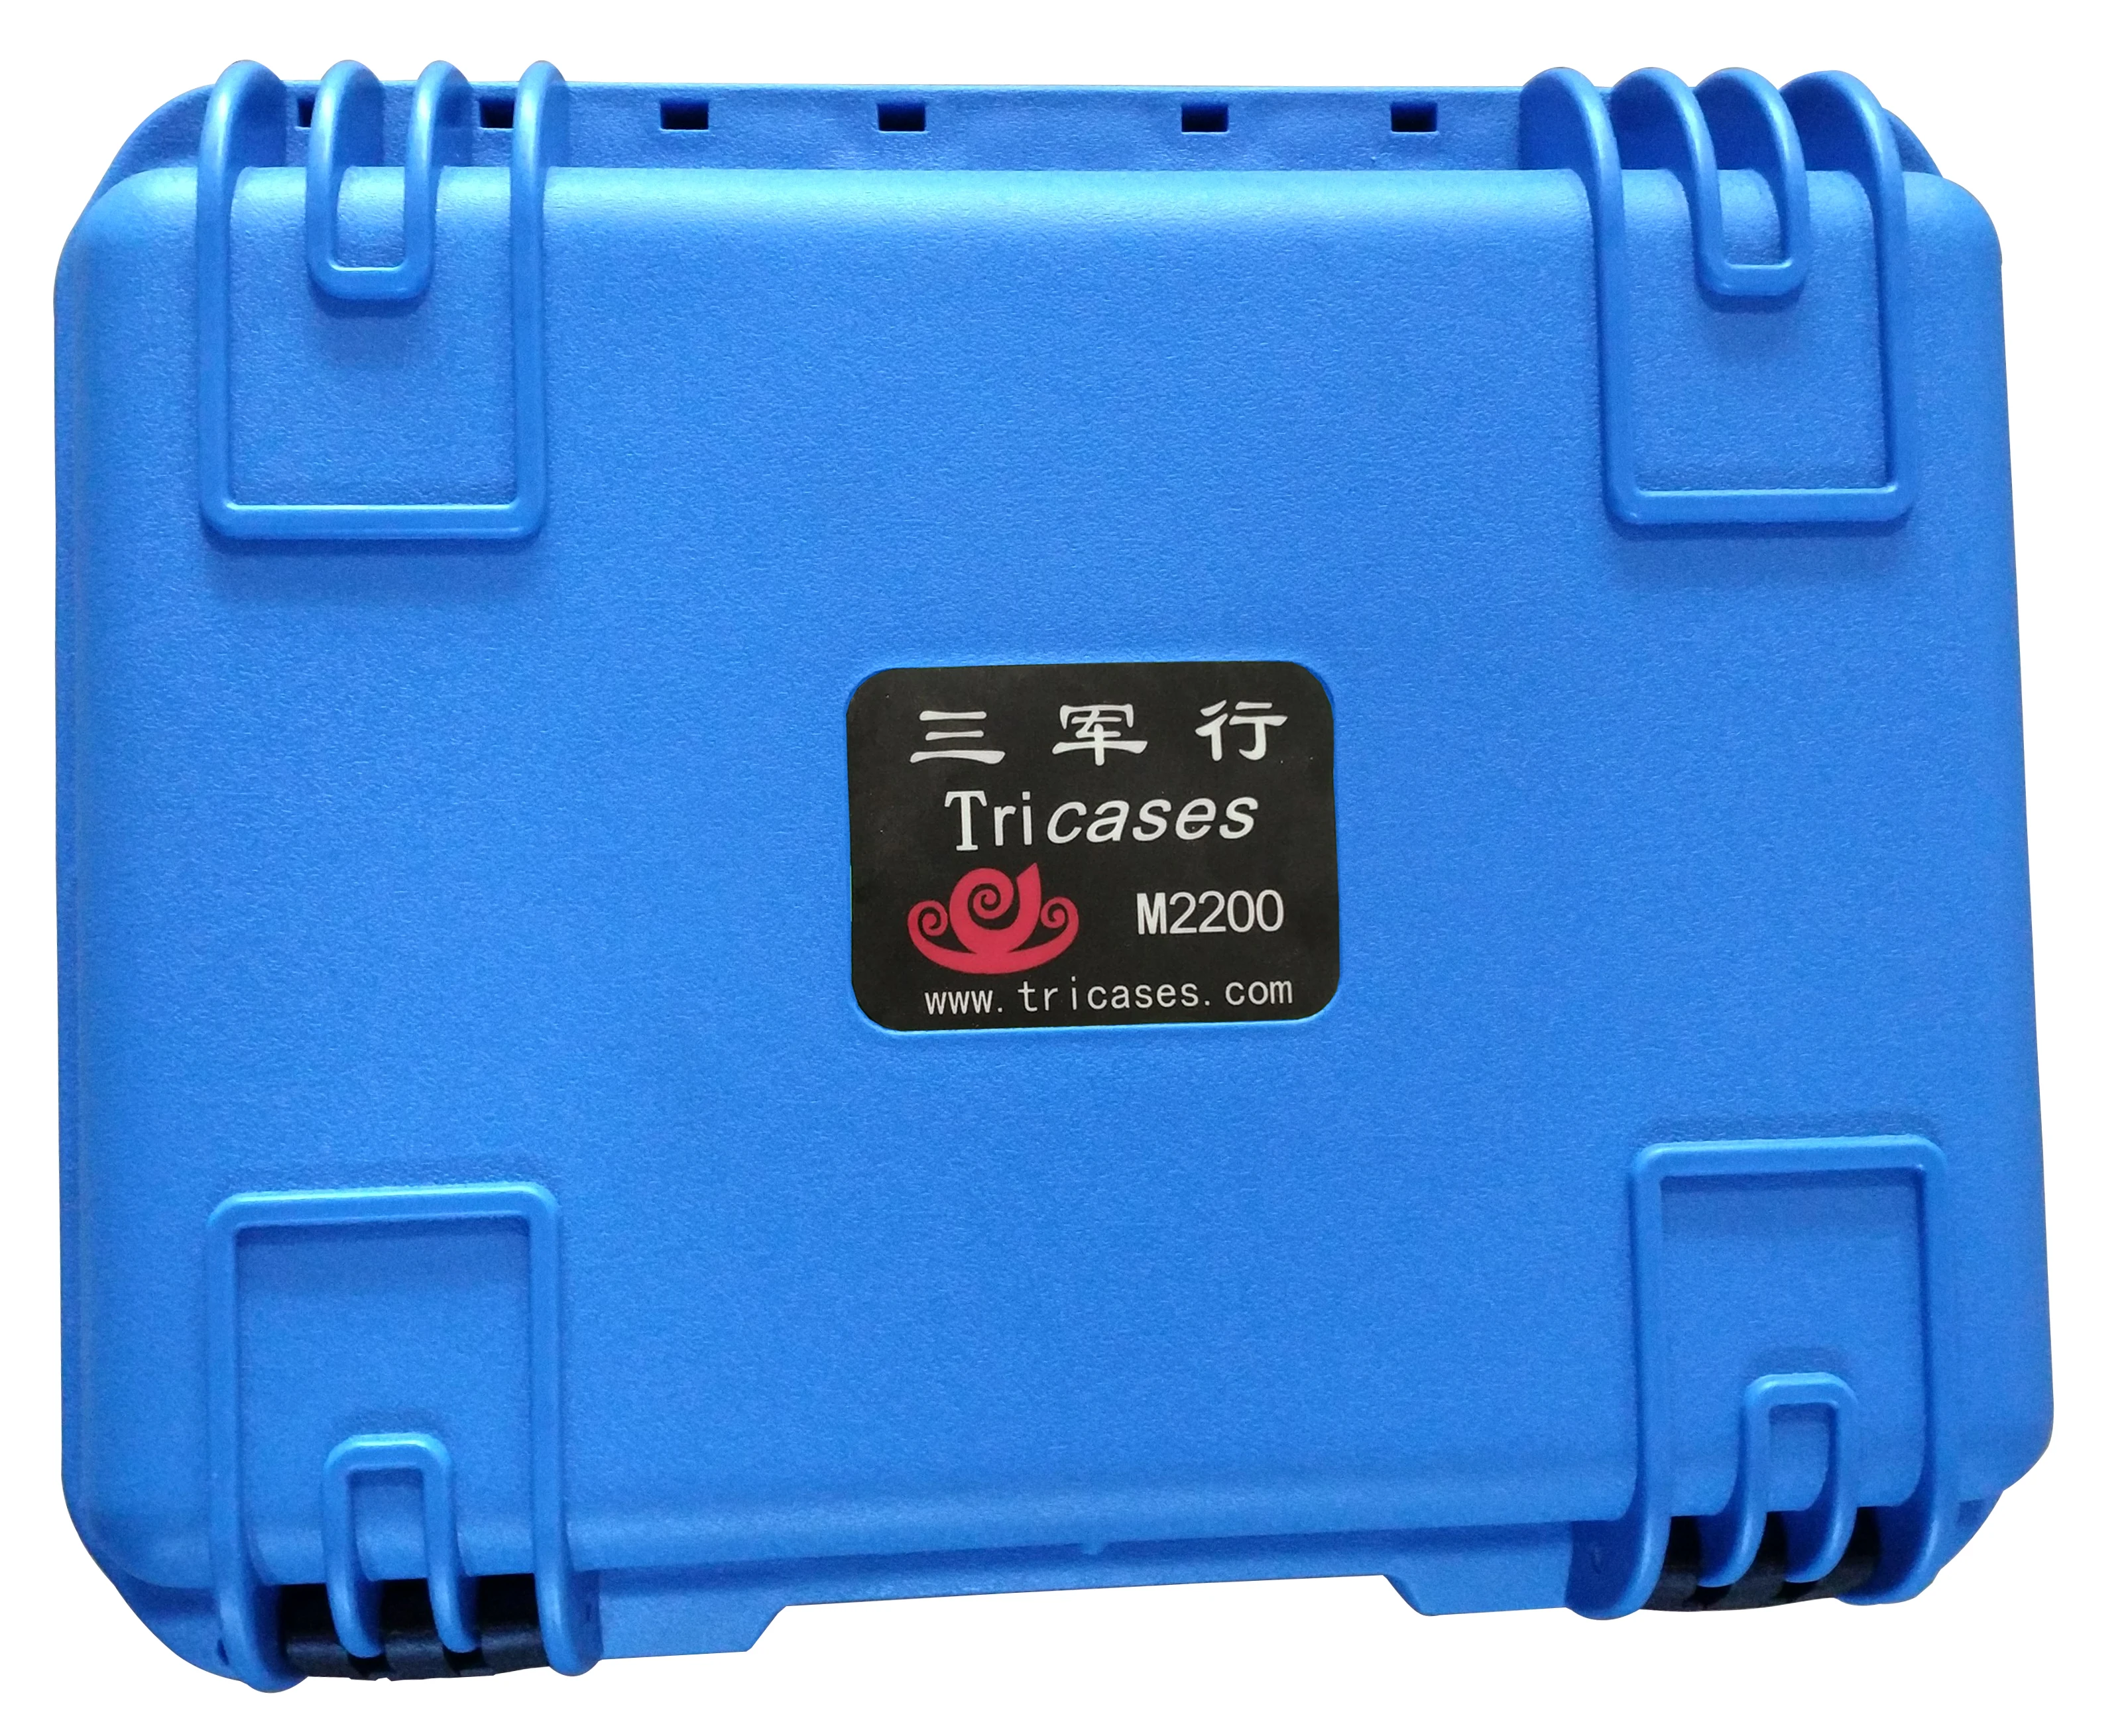 Tricases fabrika yeni gelmesi mavi renk IP67 su geçirmez darbeye dayanıklı sert PP plastik taşıma alet çantası enstrüman için M2200 . ' - ' . 4